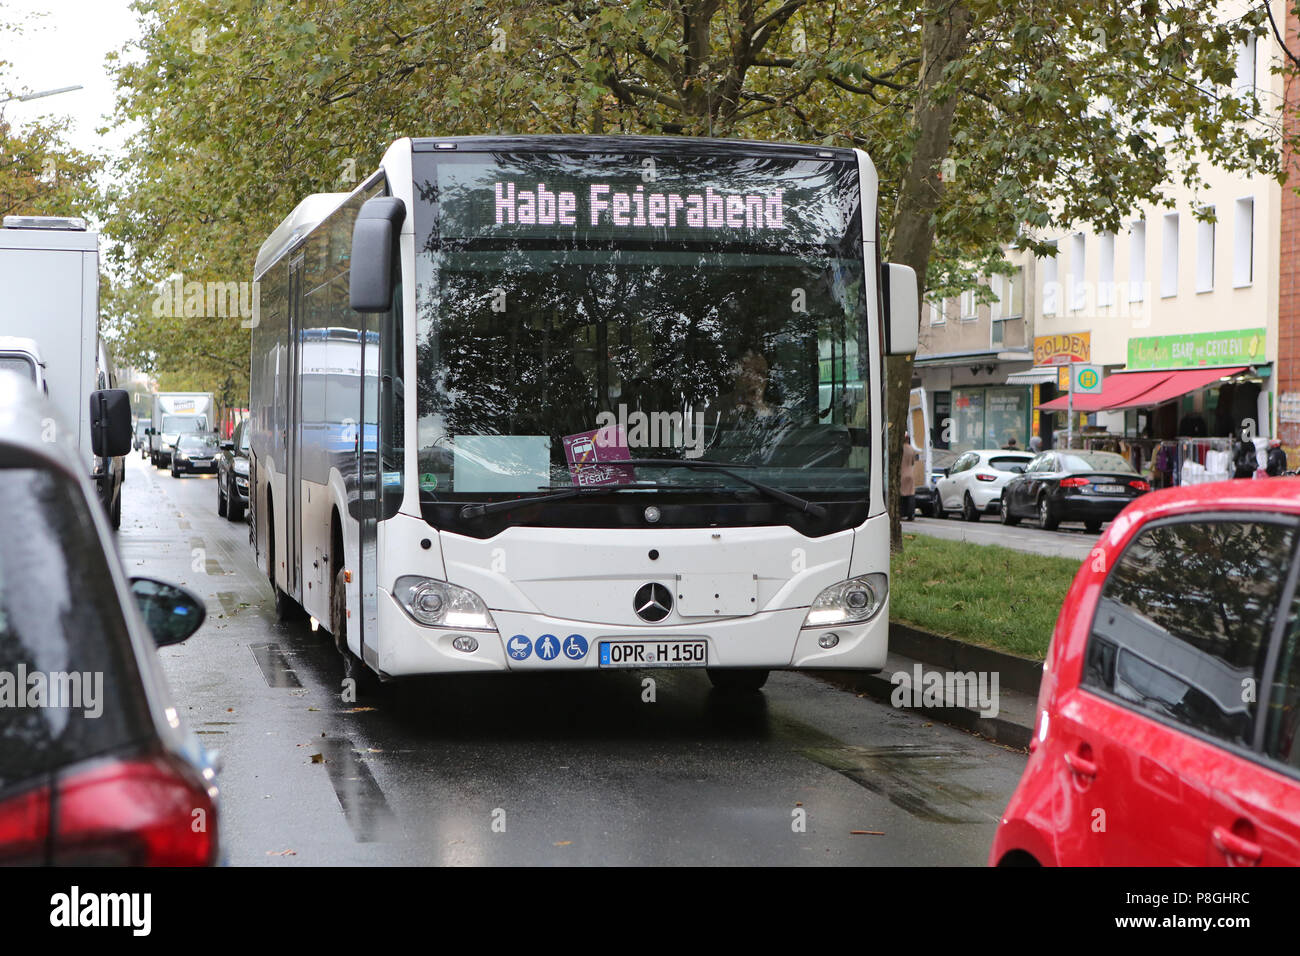 Berlin, Allemagne, chauffeur de bus est l'heure de fermeture Banque D'Images